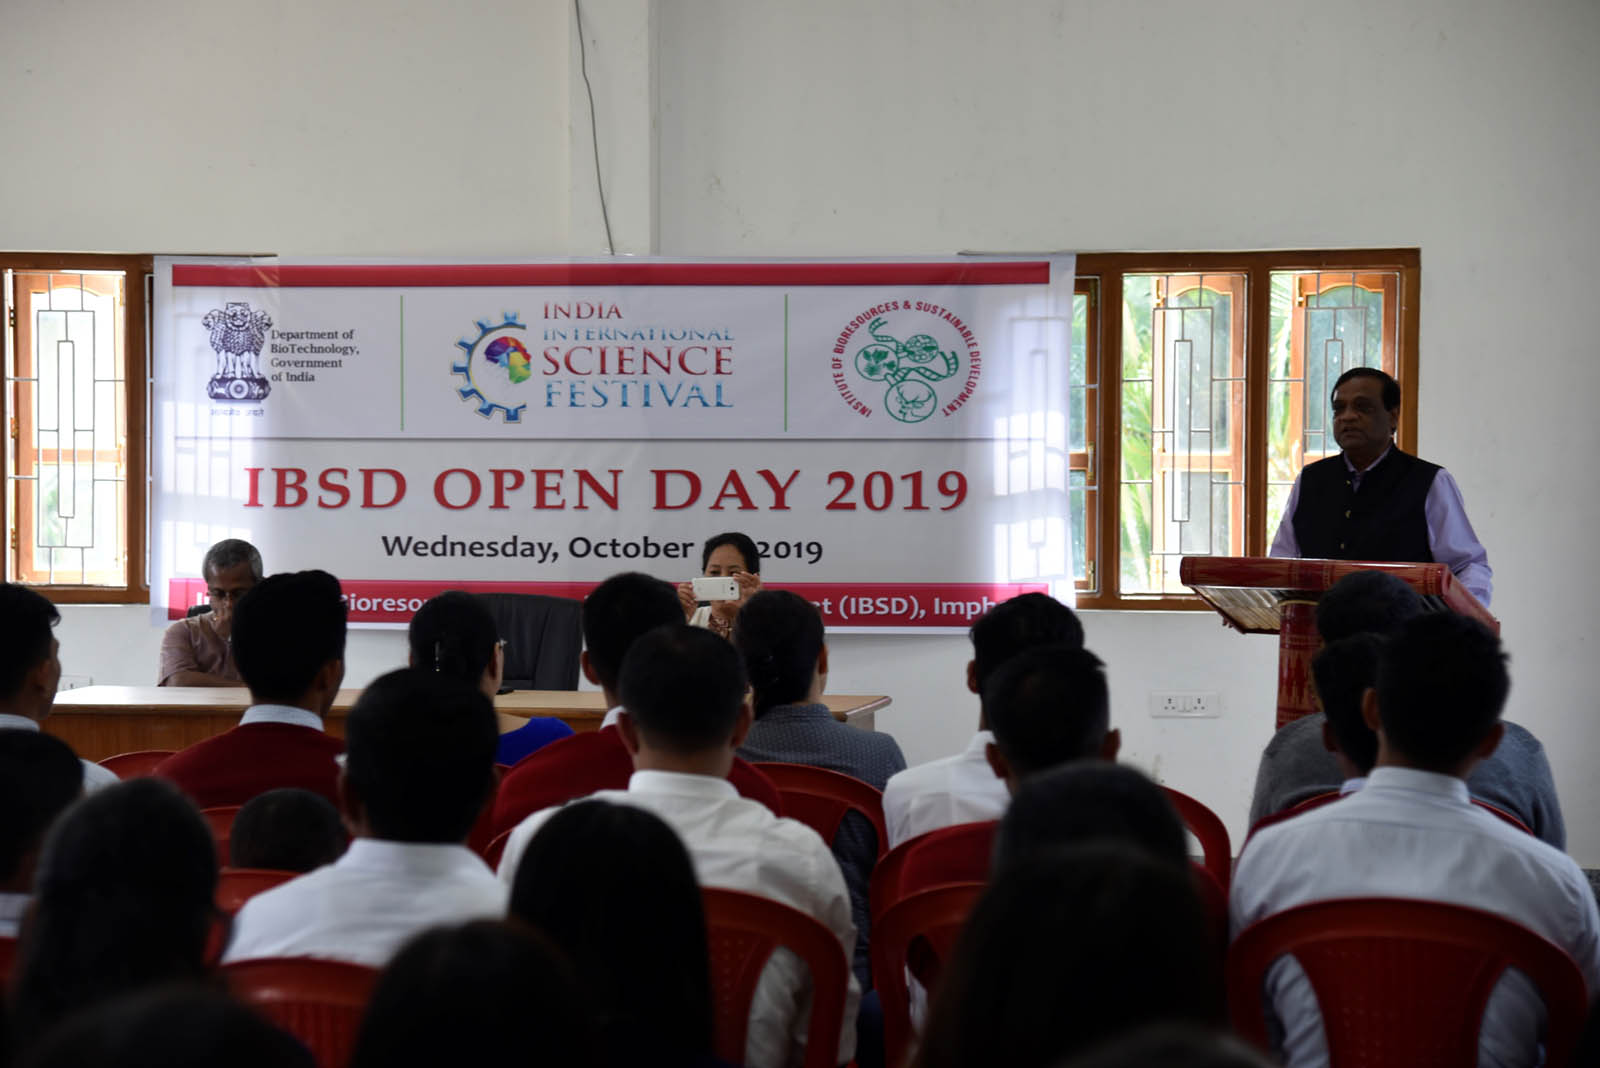 IBSD Open Day 2019photos